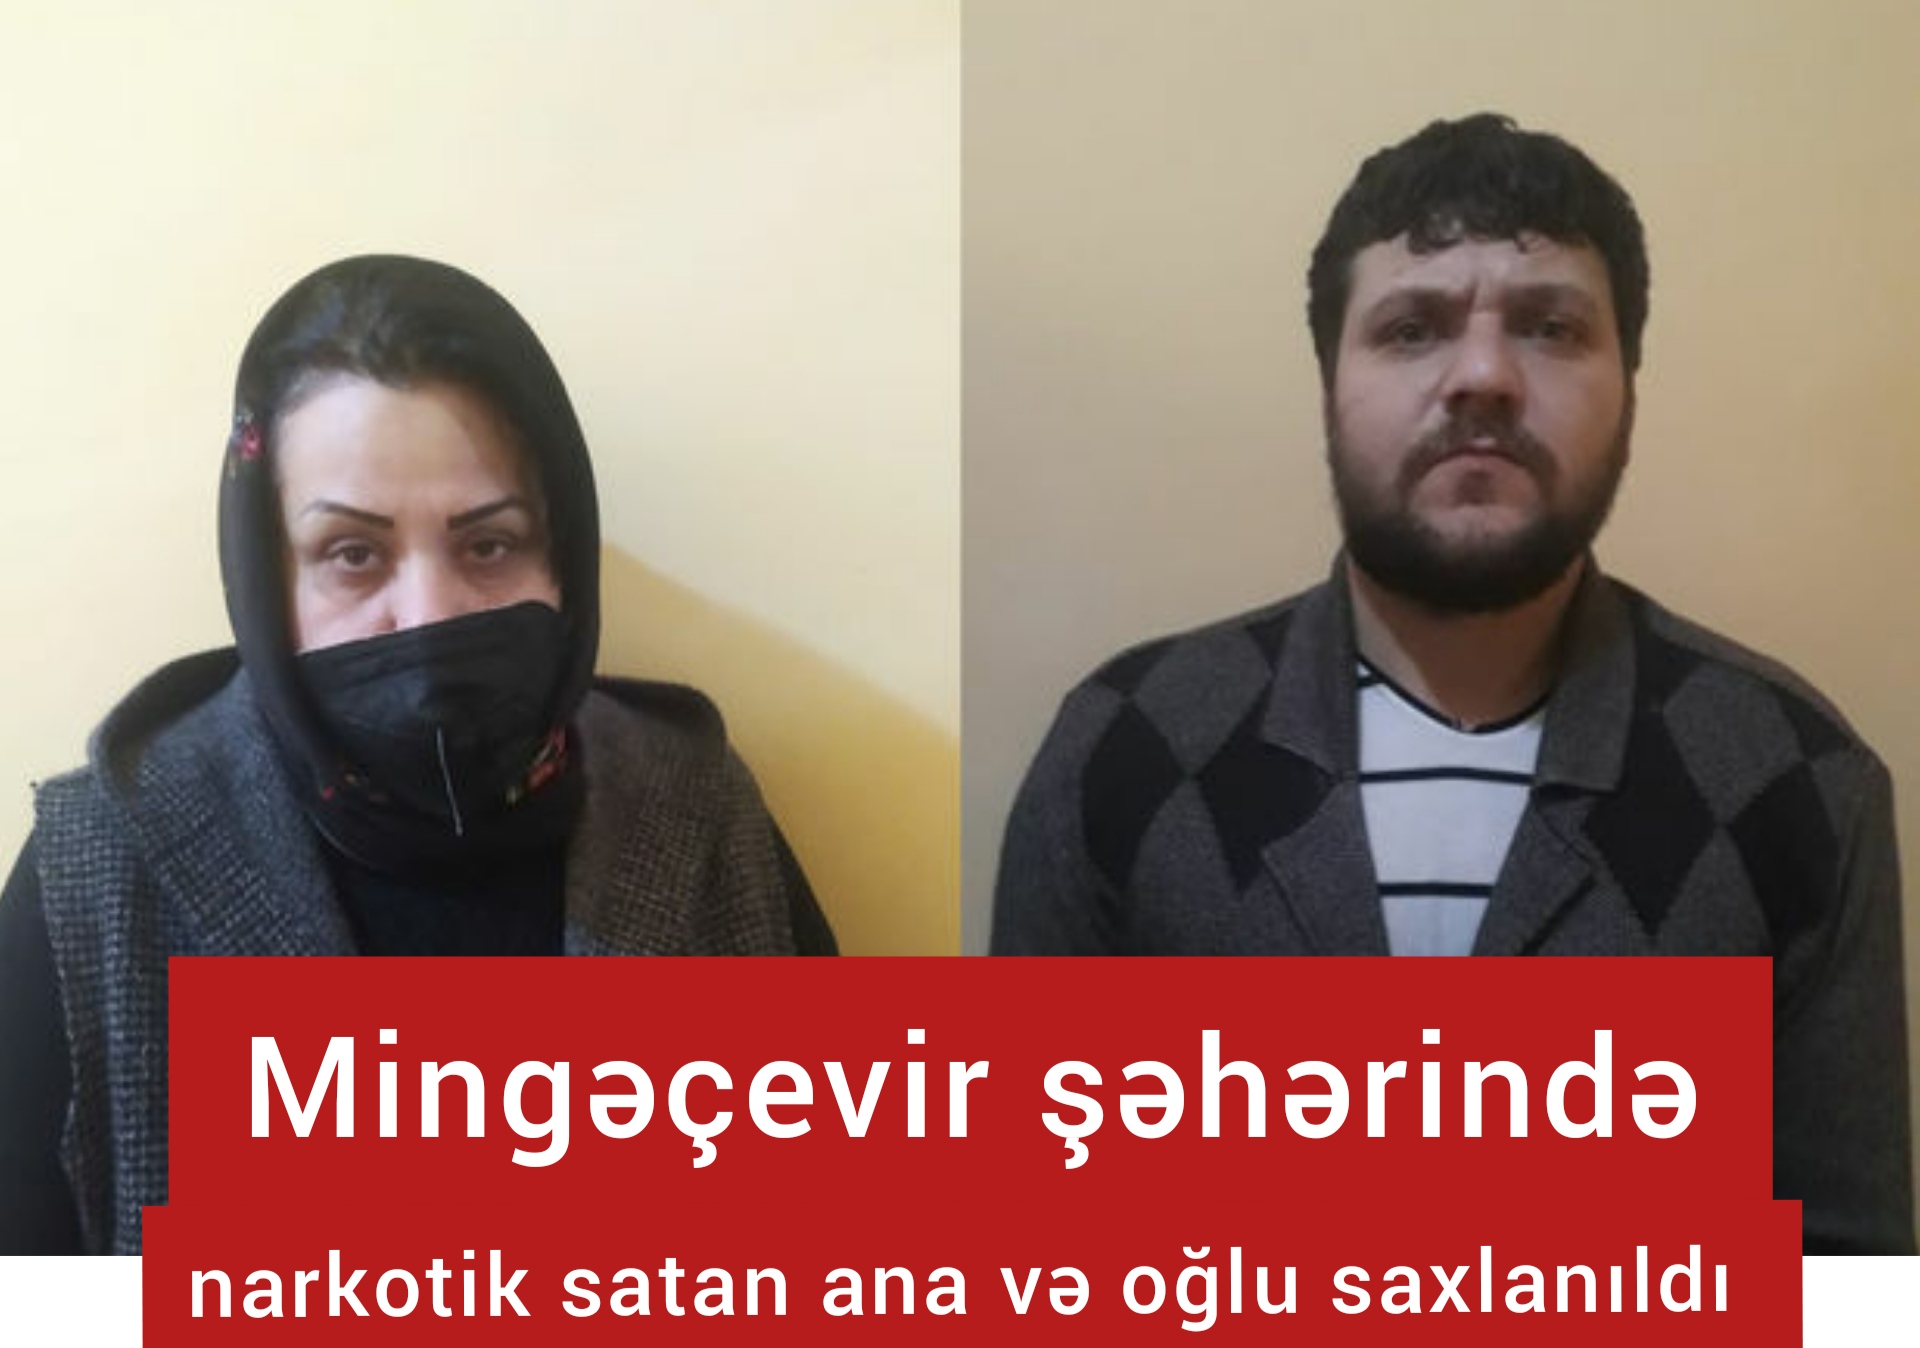 Mingəçevirdə narkotik satan ana və oğlu saxlanıldı